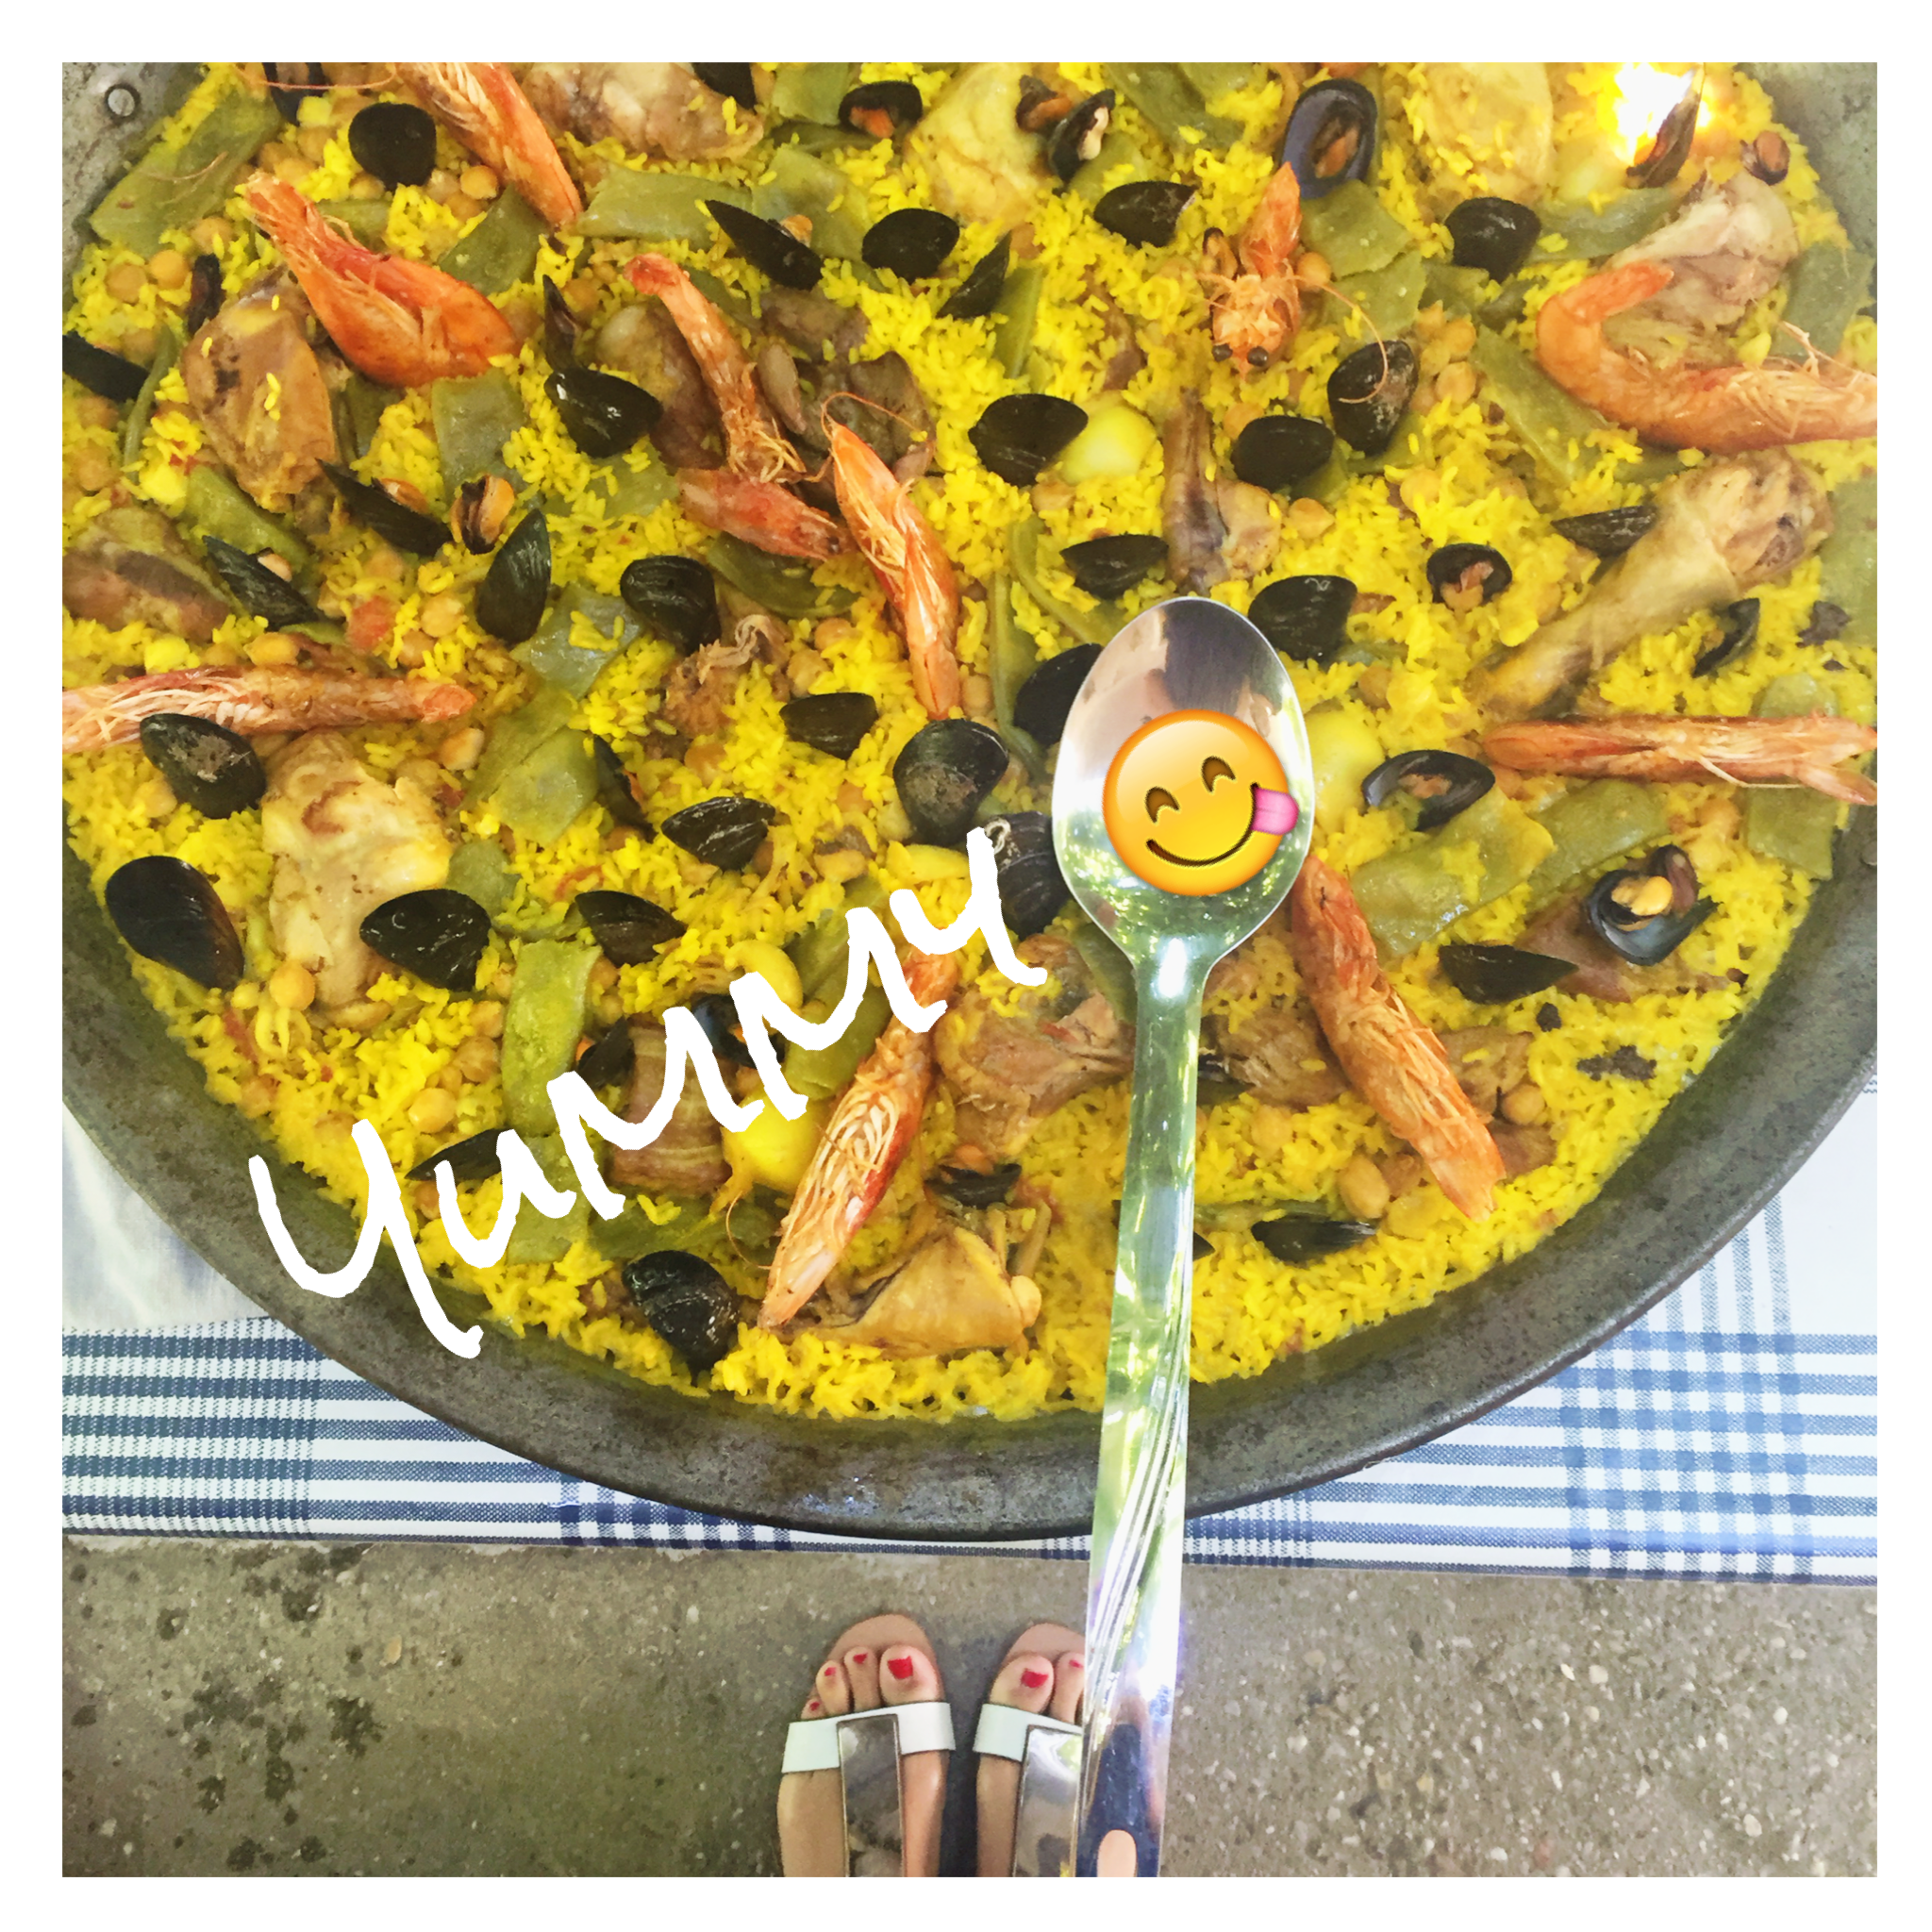 La VRAI paella – yummy